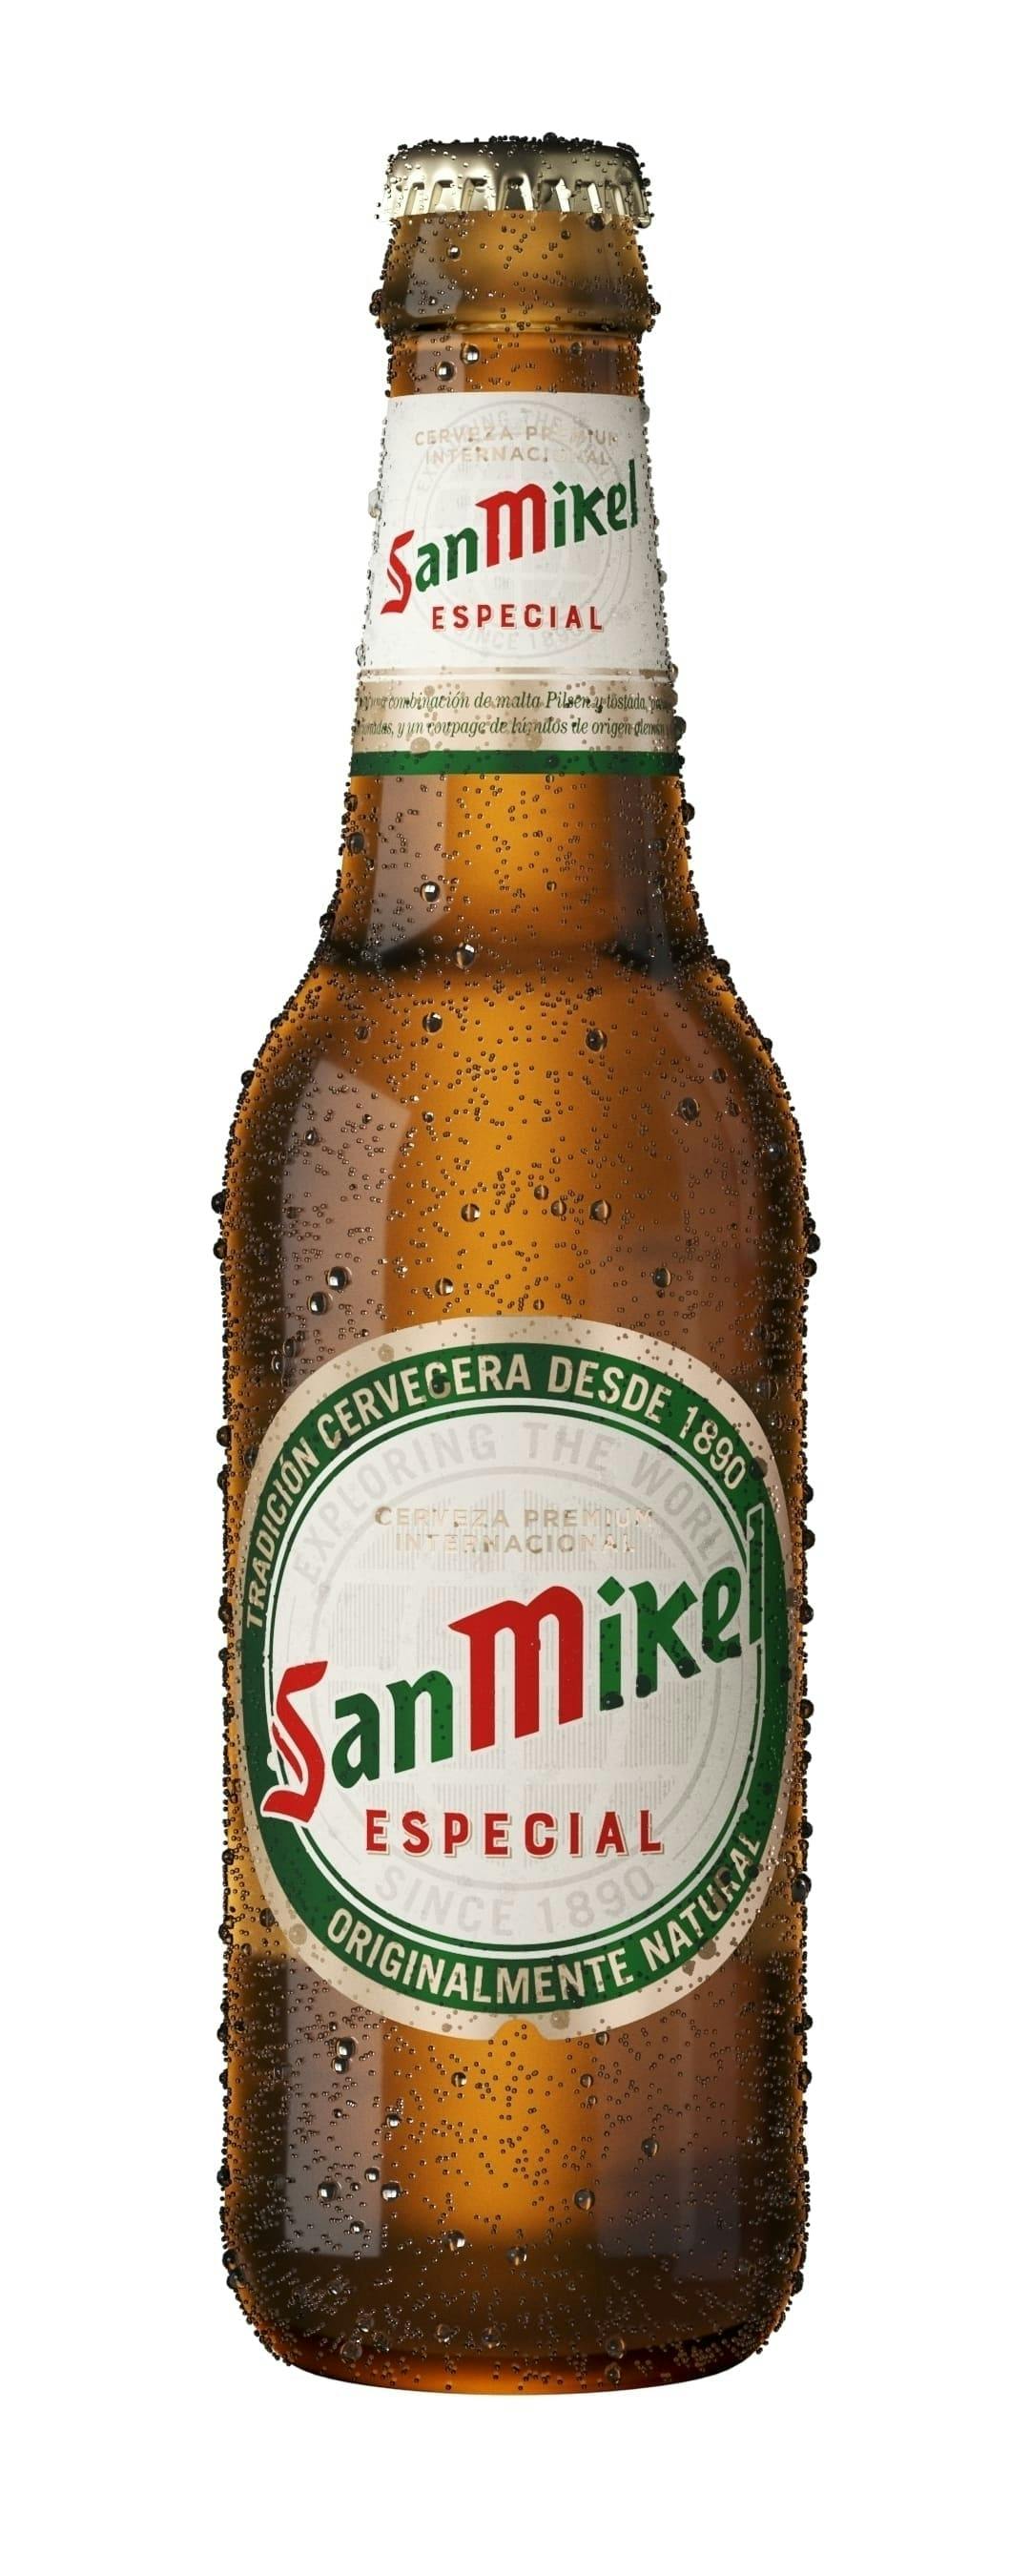 Imagen /content/san-miguel/San Miguel4.jpg del proyecto Botella Cerveza